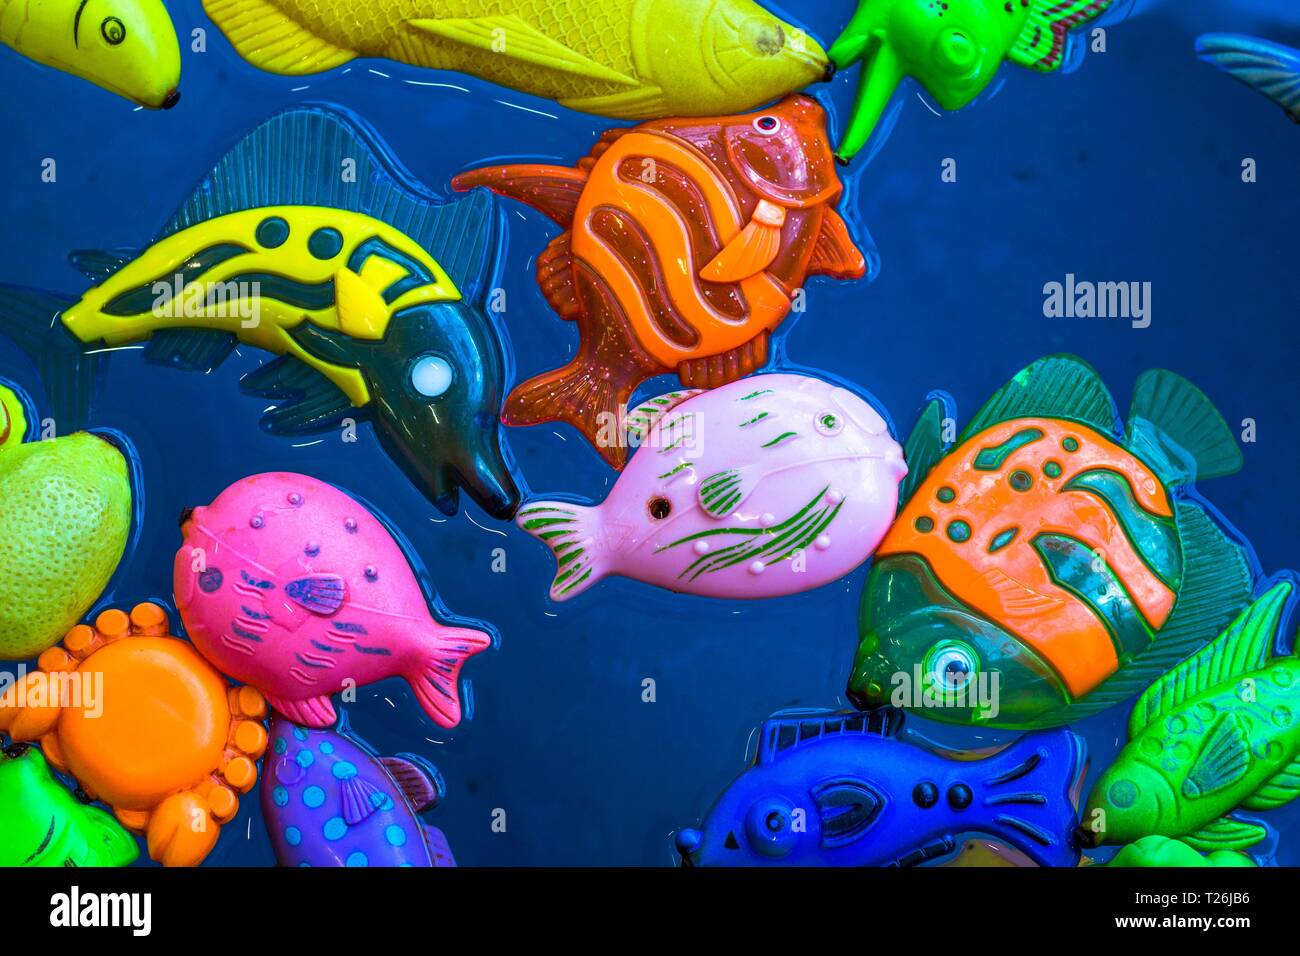 Mehrere igushek in Form von marine Fische schwimmen im Wasser. Die Spielzeuge sind sehr helle Farben und schönen vor dem Hintergrund des blauen Wassers. Stockfoto